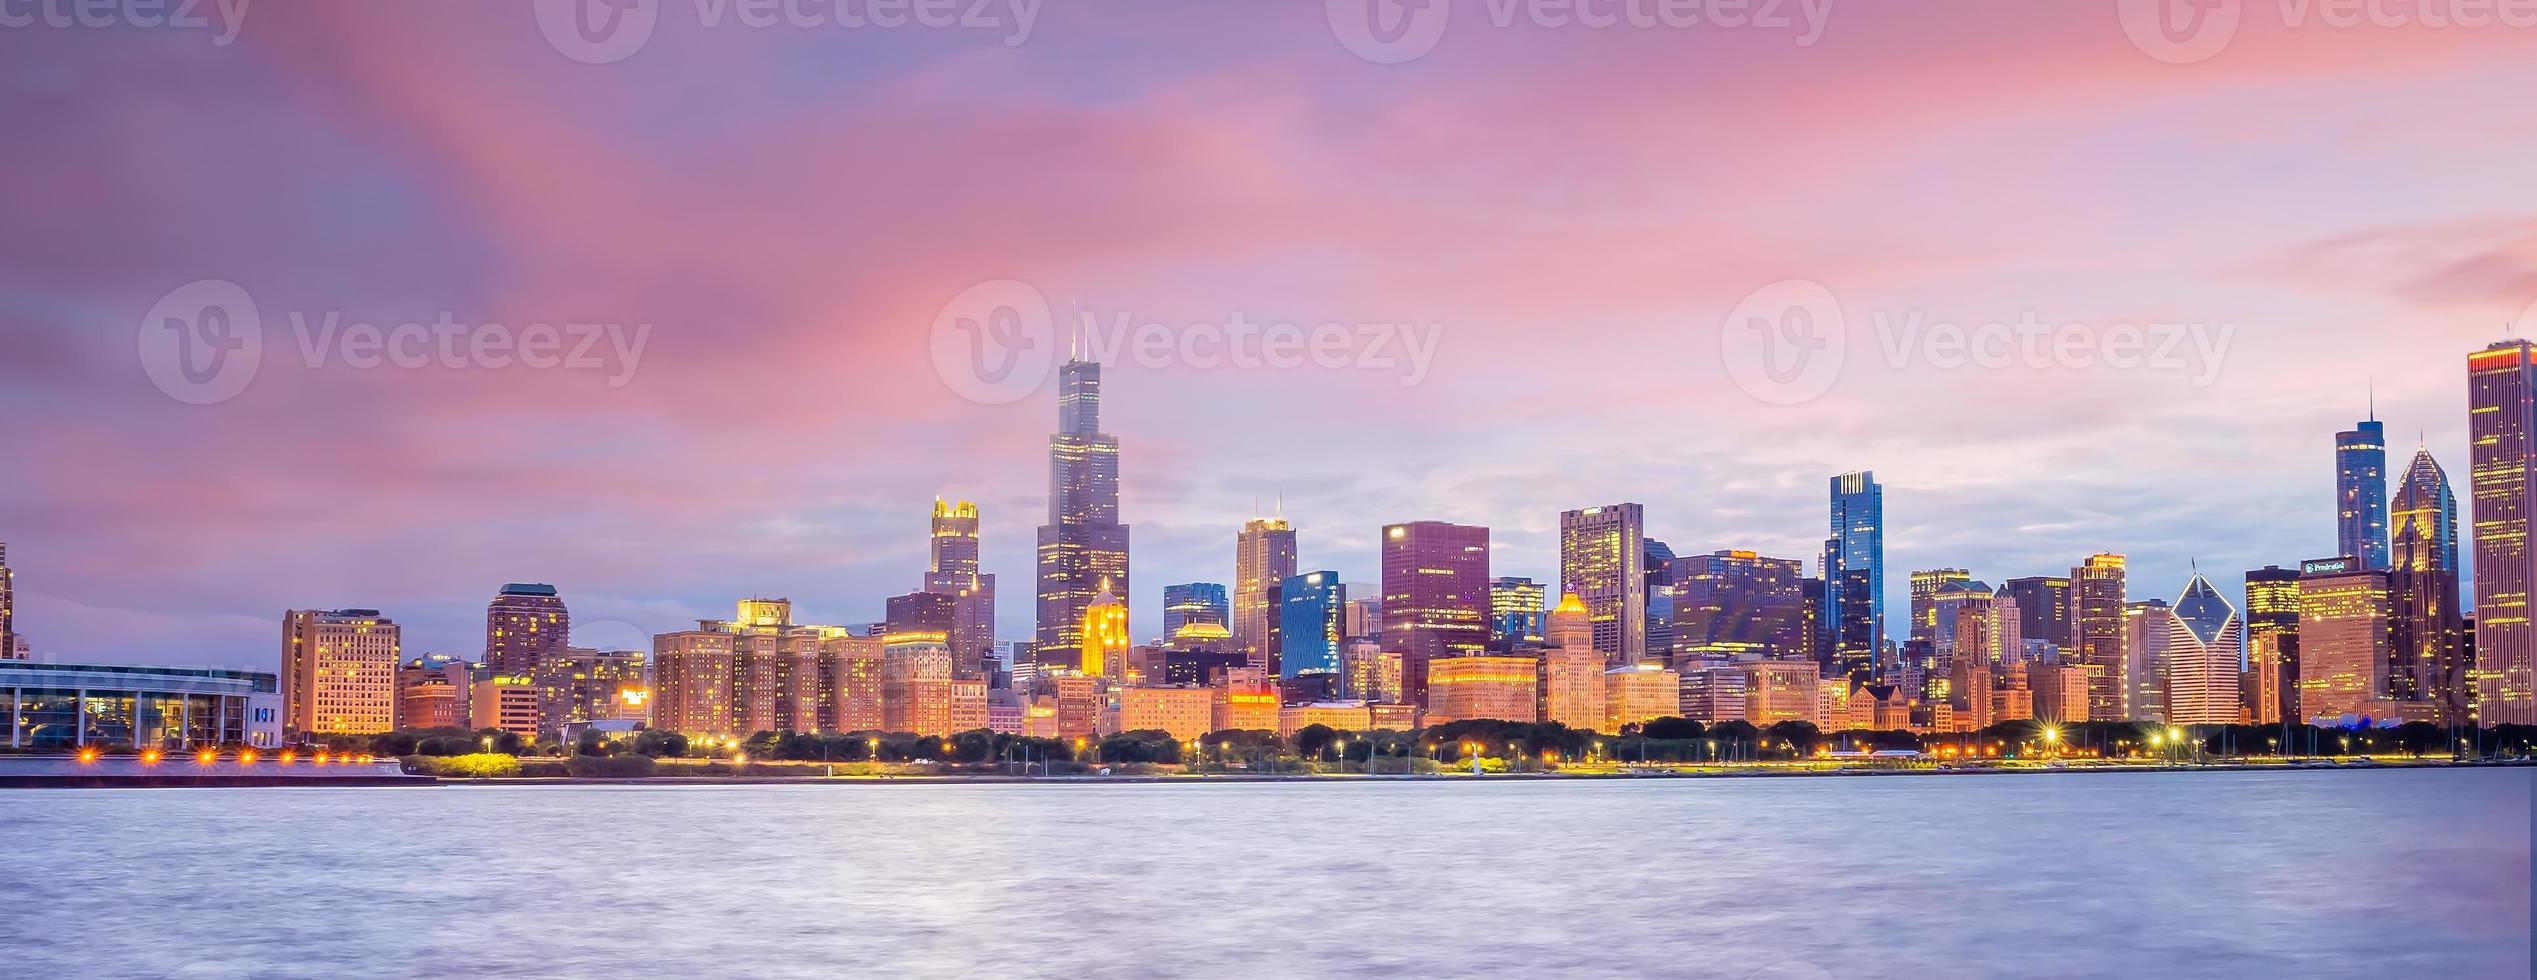 Le centre-ville de Chicago skyline paysage urbain aux Etats-Unis photo